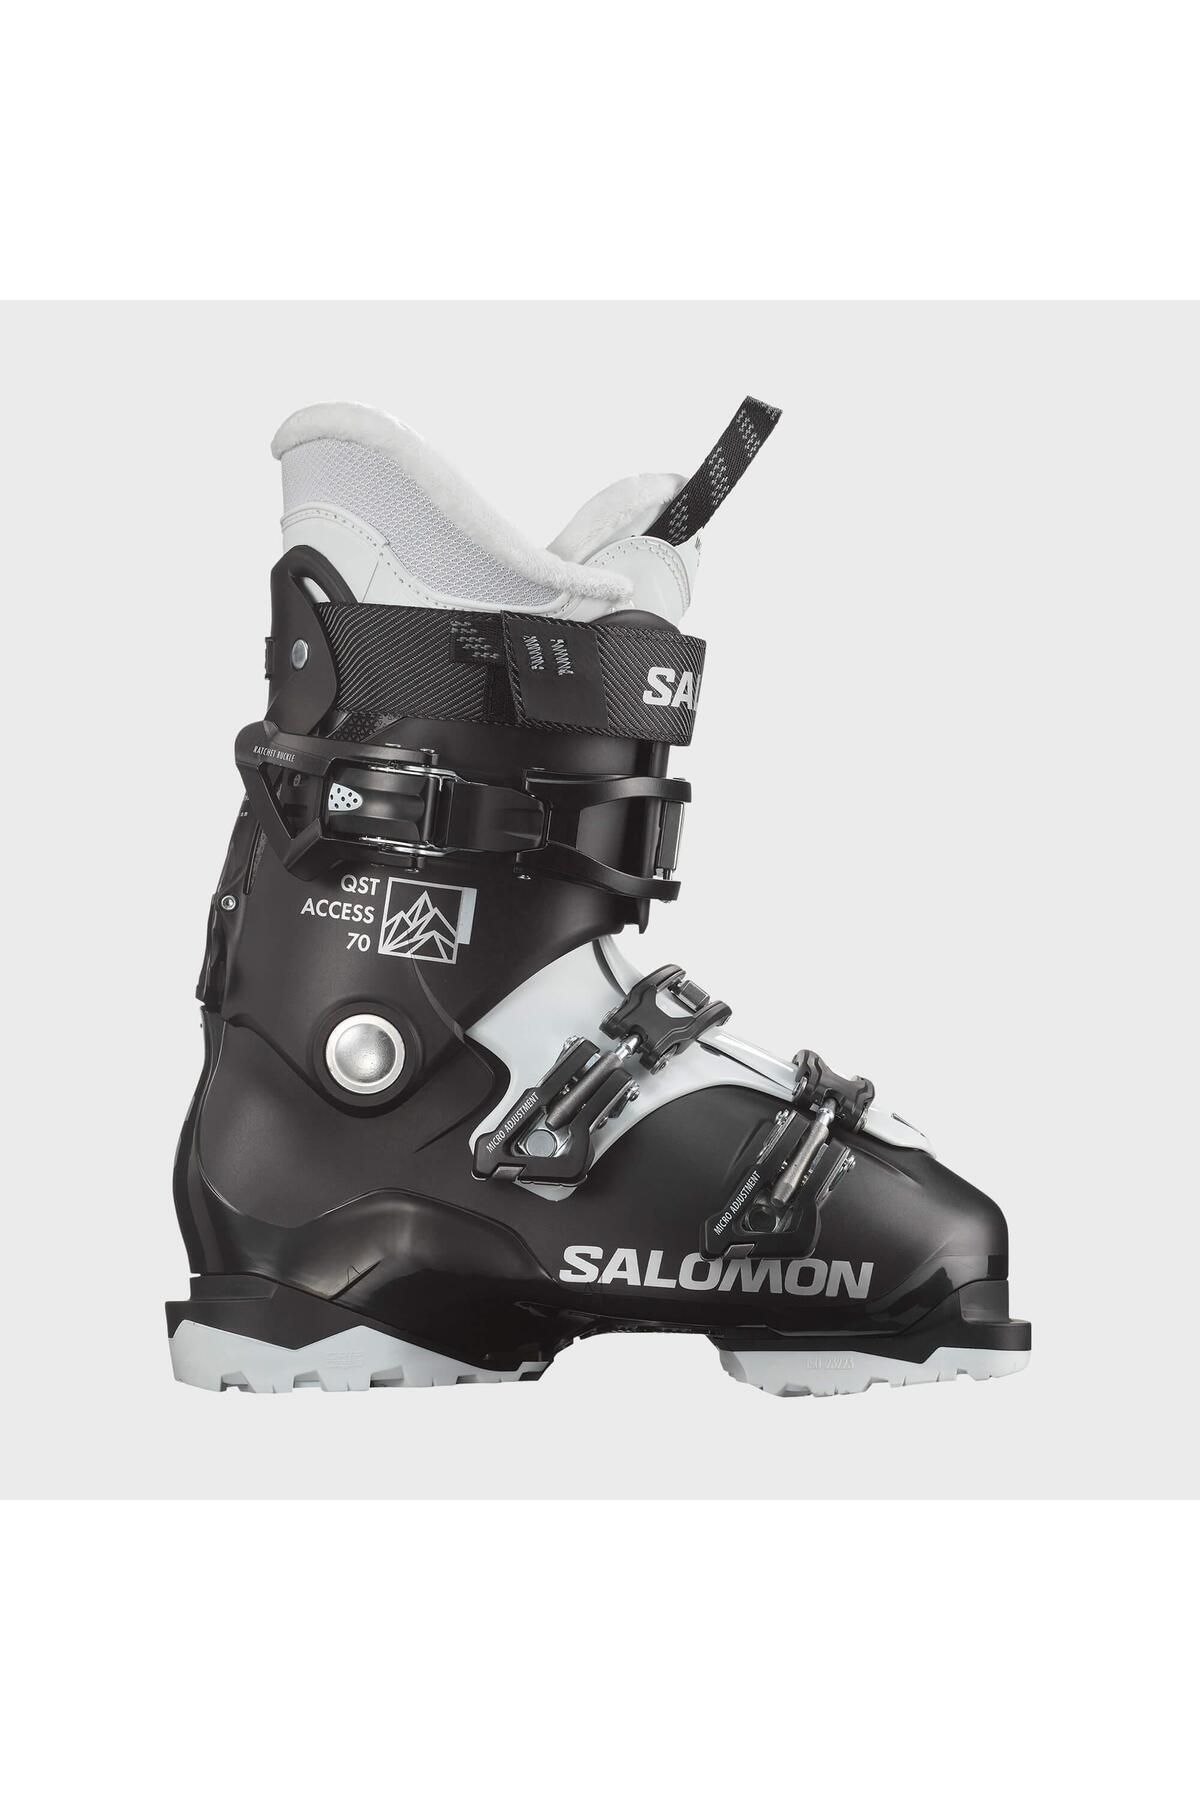 Salomon Qst Access 70 Kadın Kayak Ayakkabısı-l47344500720